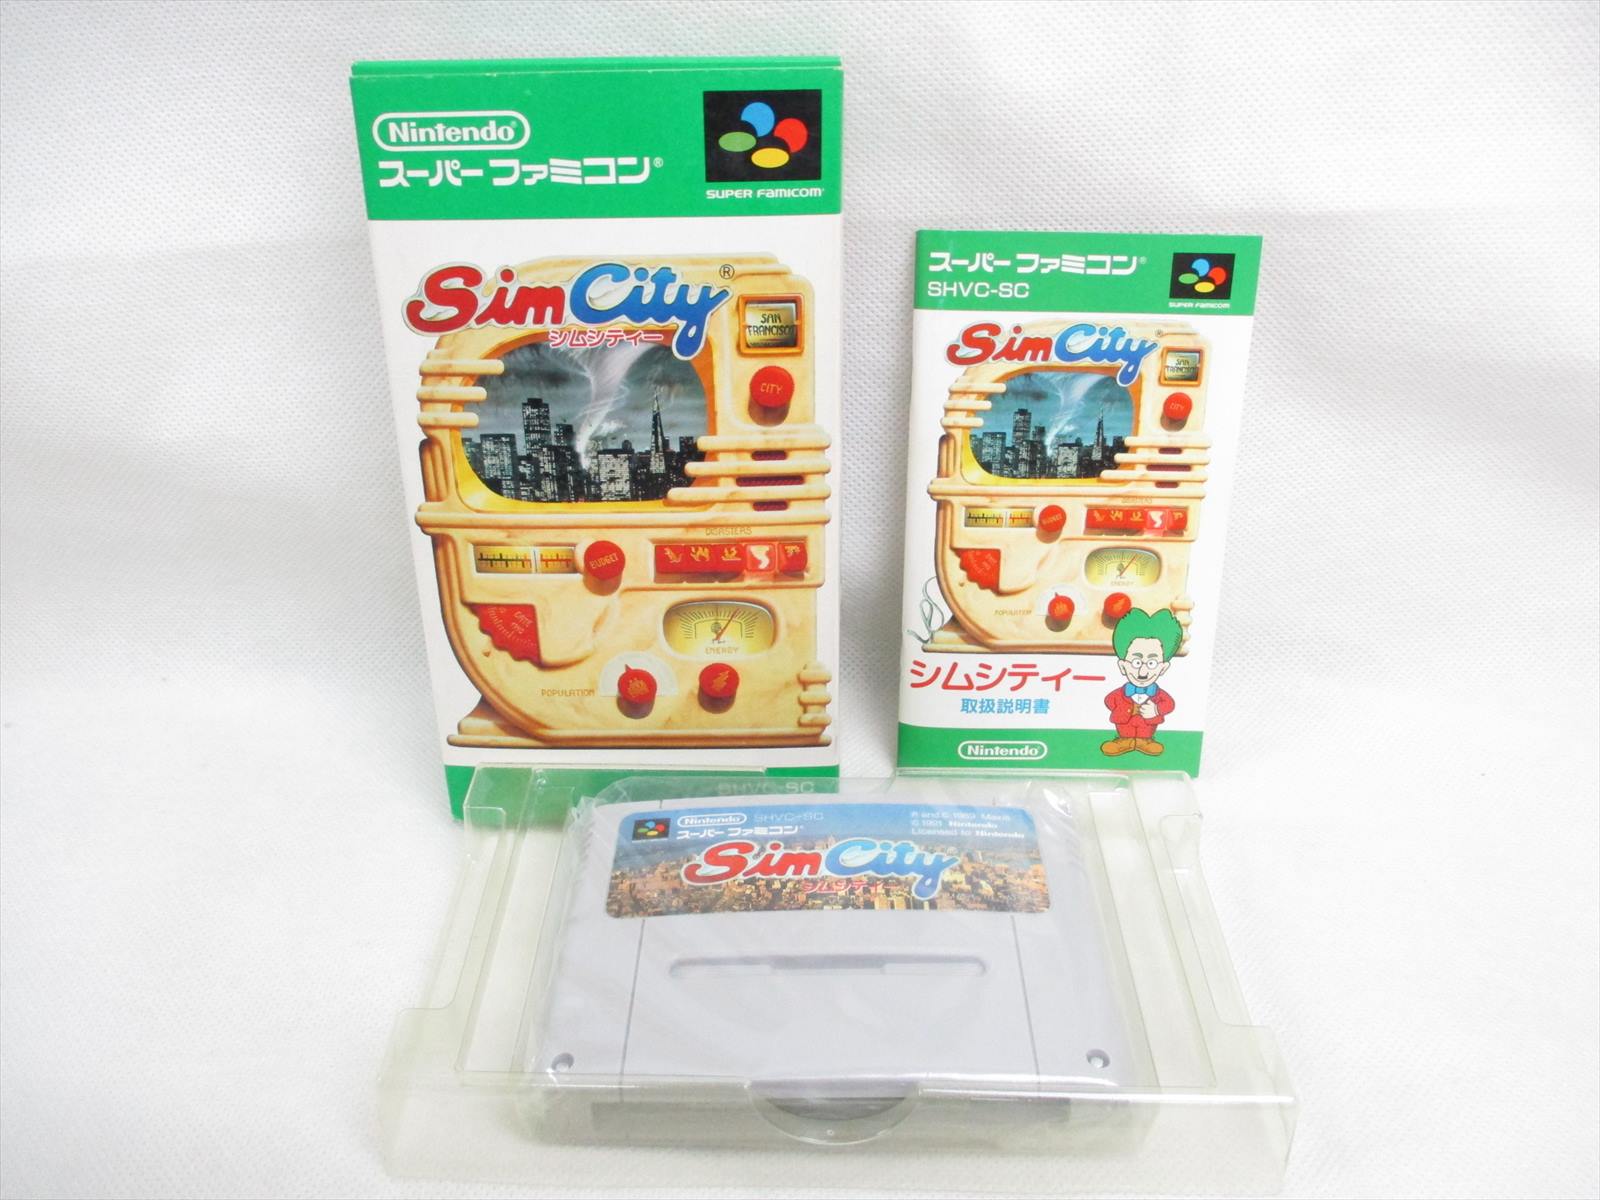 Sim City Super Famicom Nintendo Japan Game Sf 4902370501292 Ebay